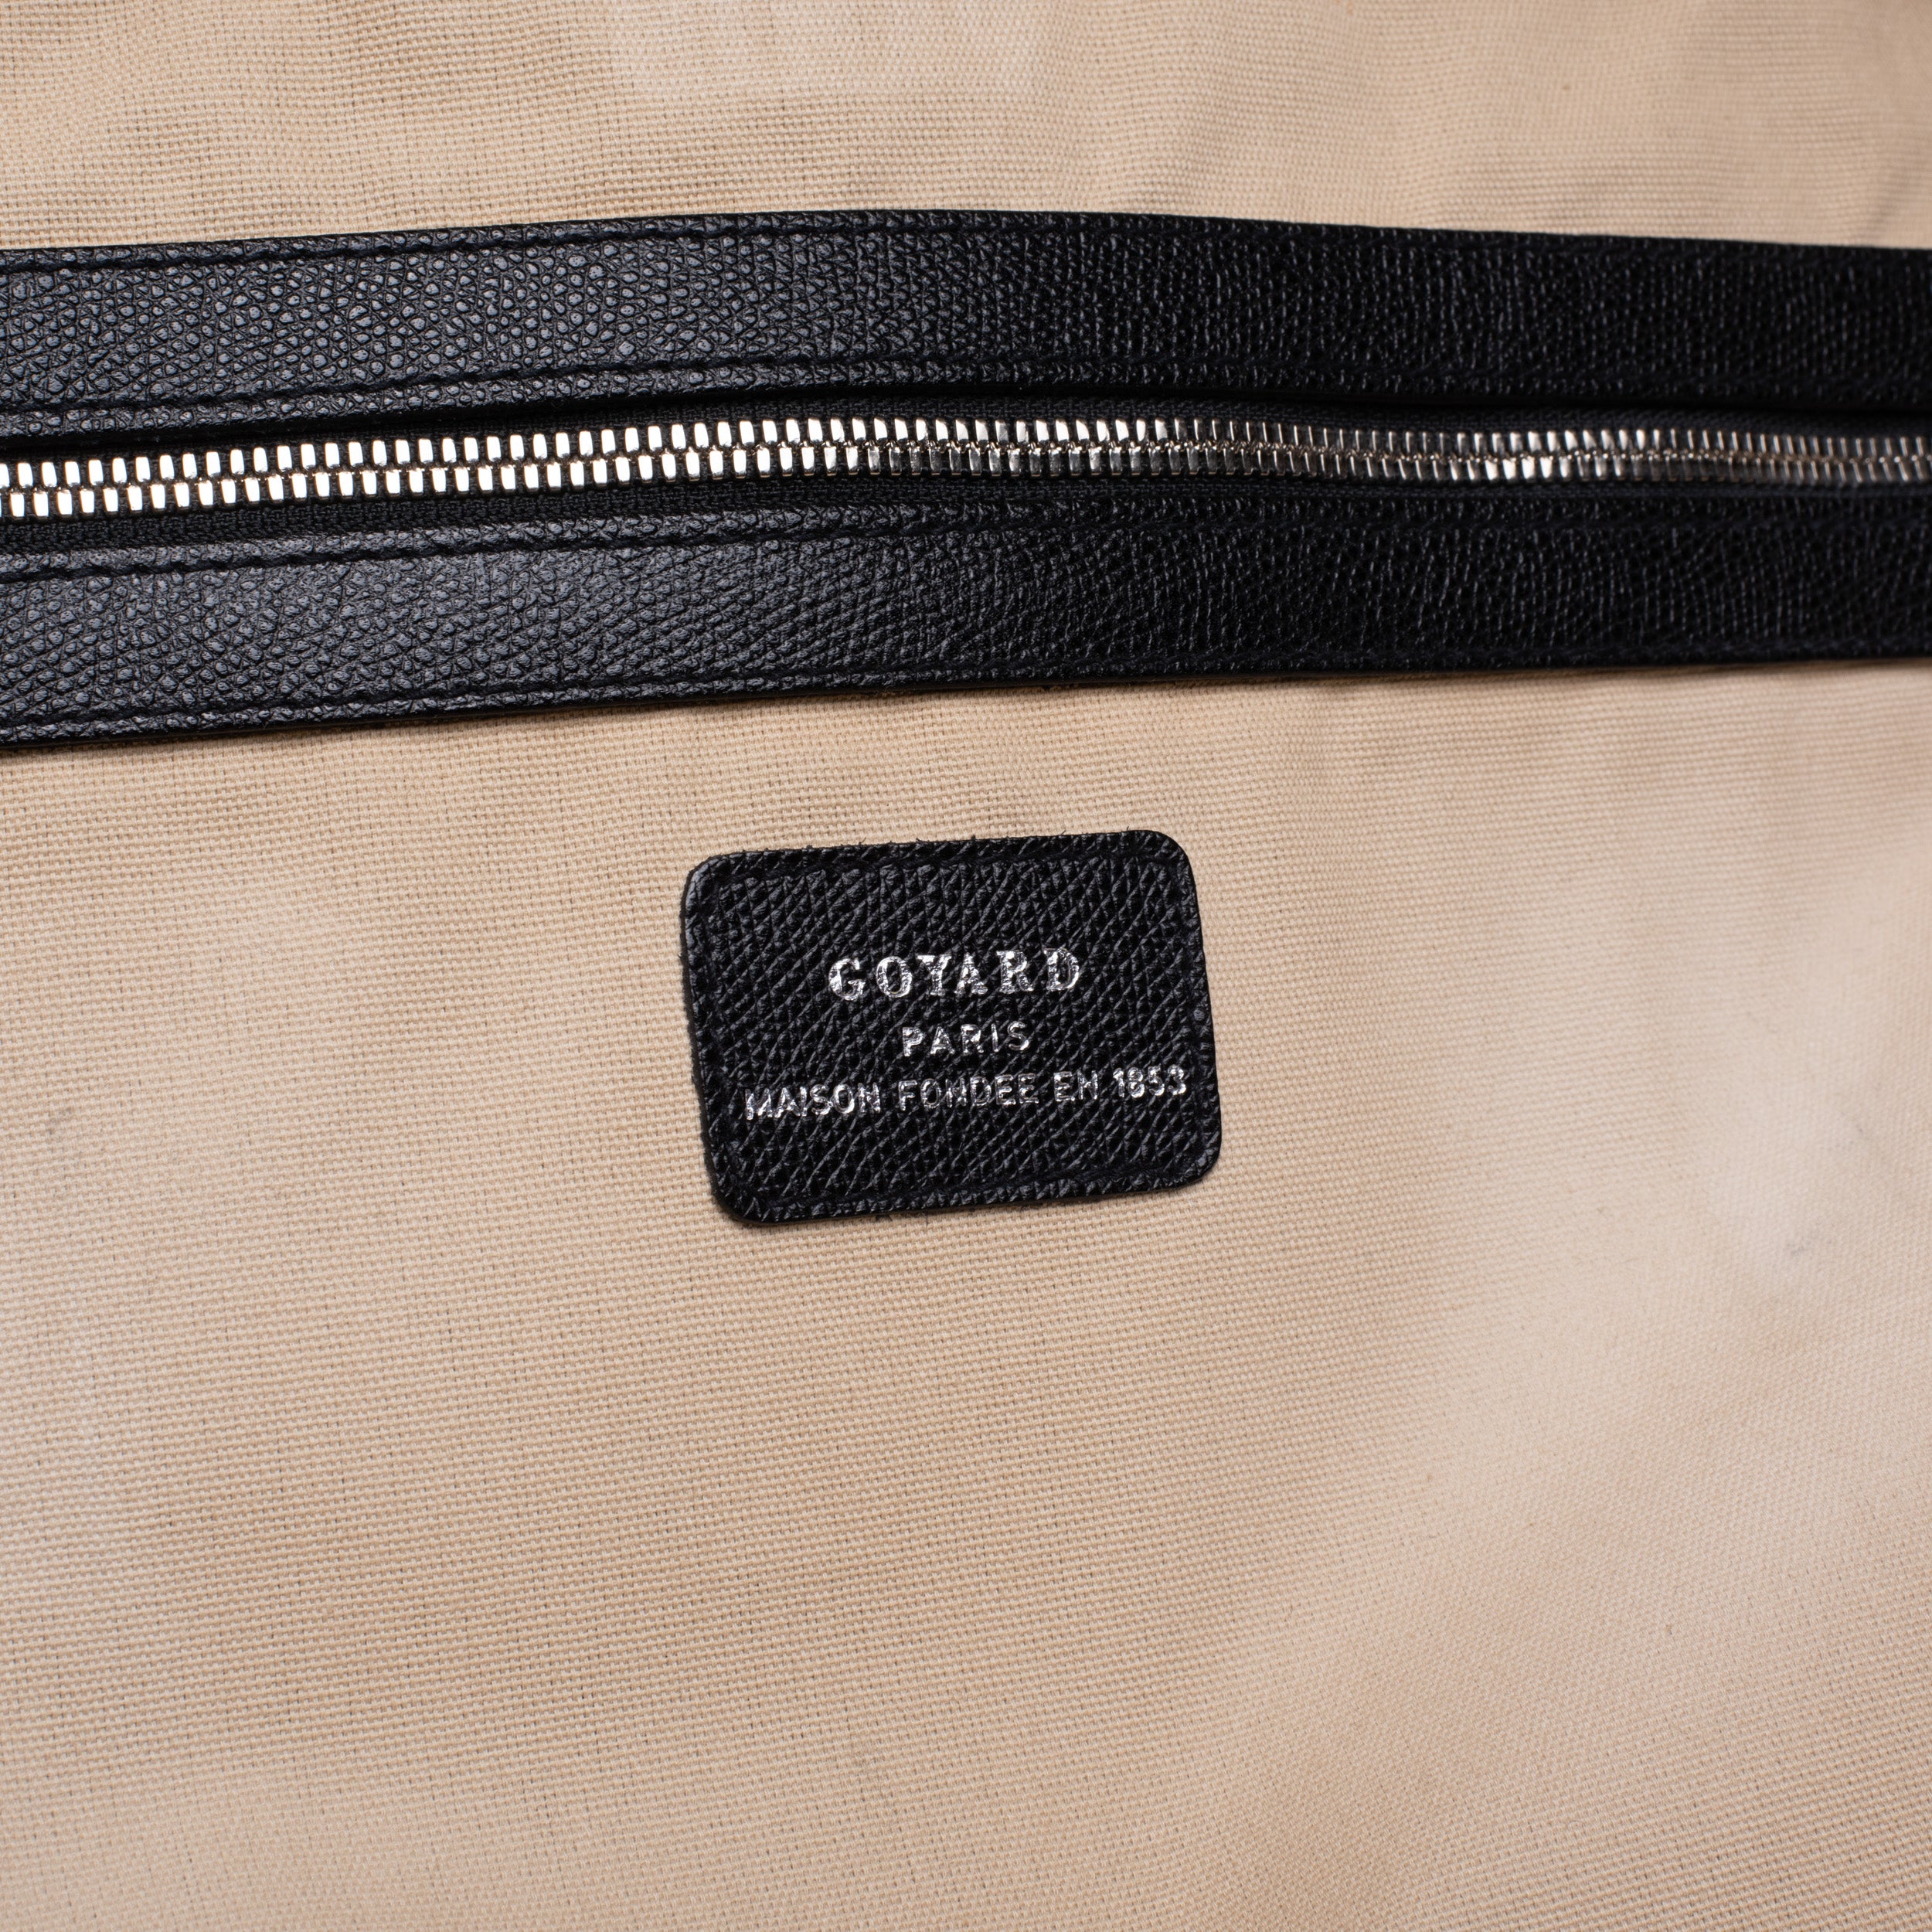 Used Goyard Monogram Boston Bag Blue Leather Logo Travel